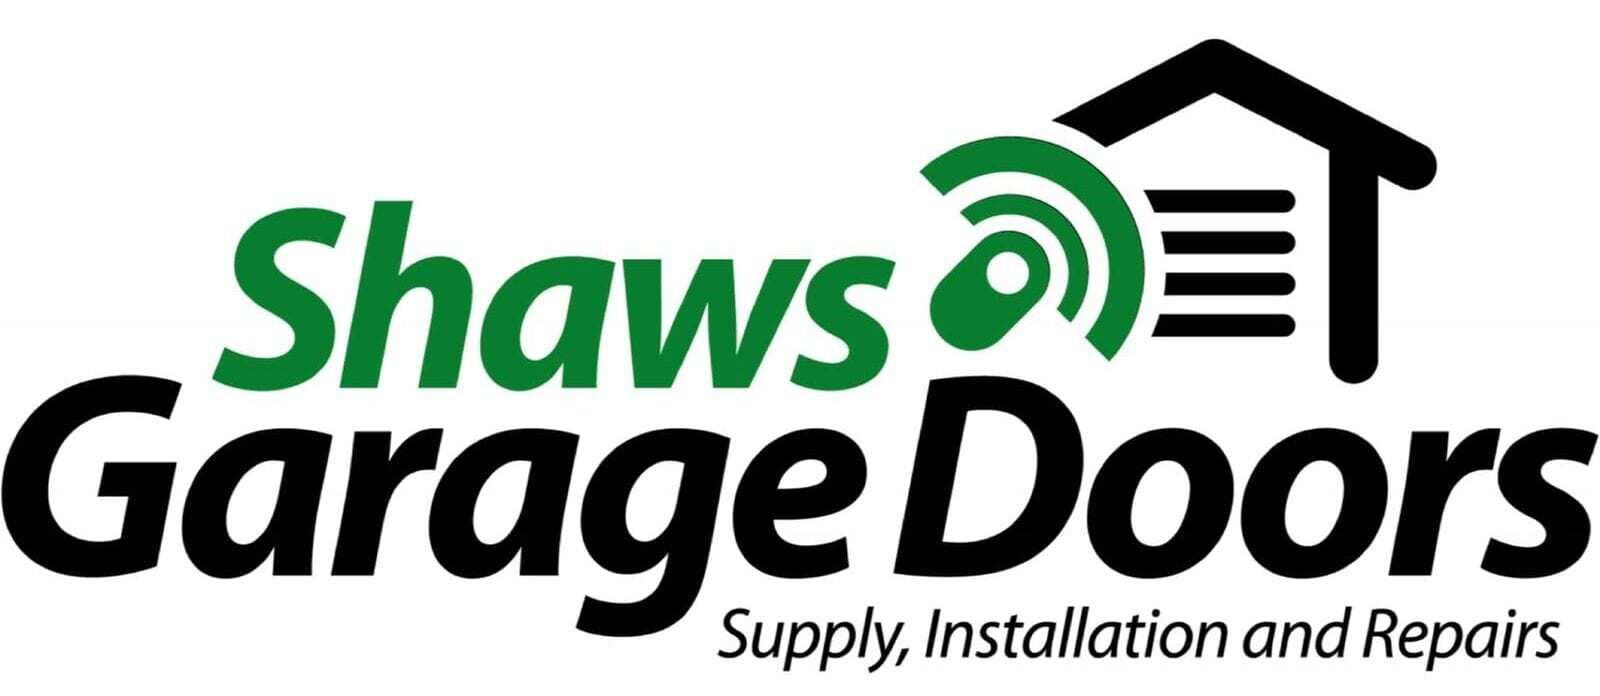 Shaws Garage Doors logo